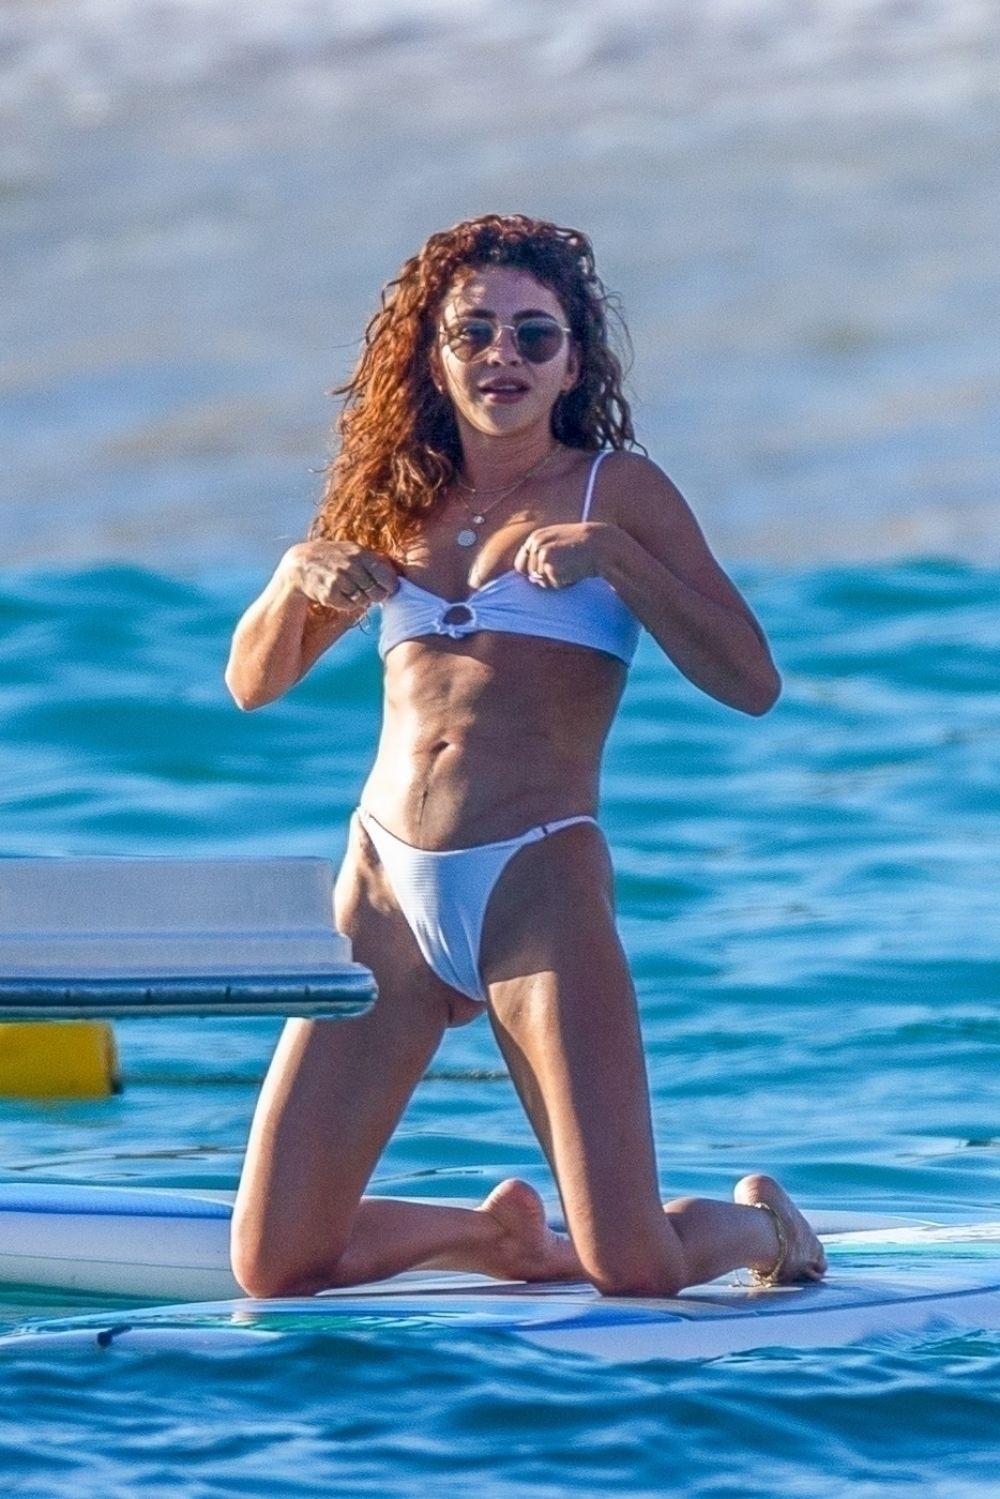 Sarah hyland in bikini